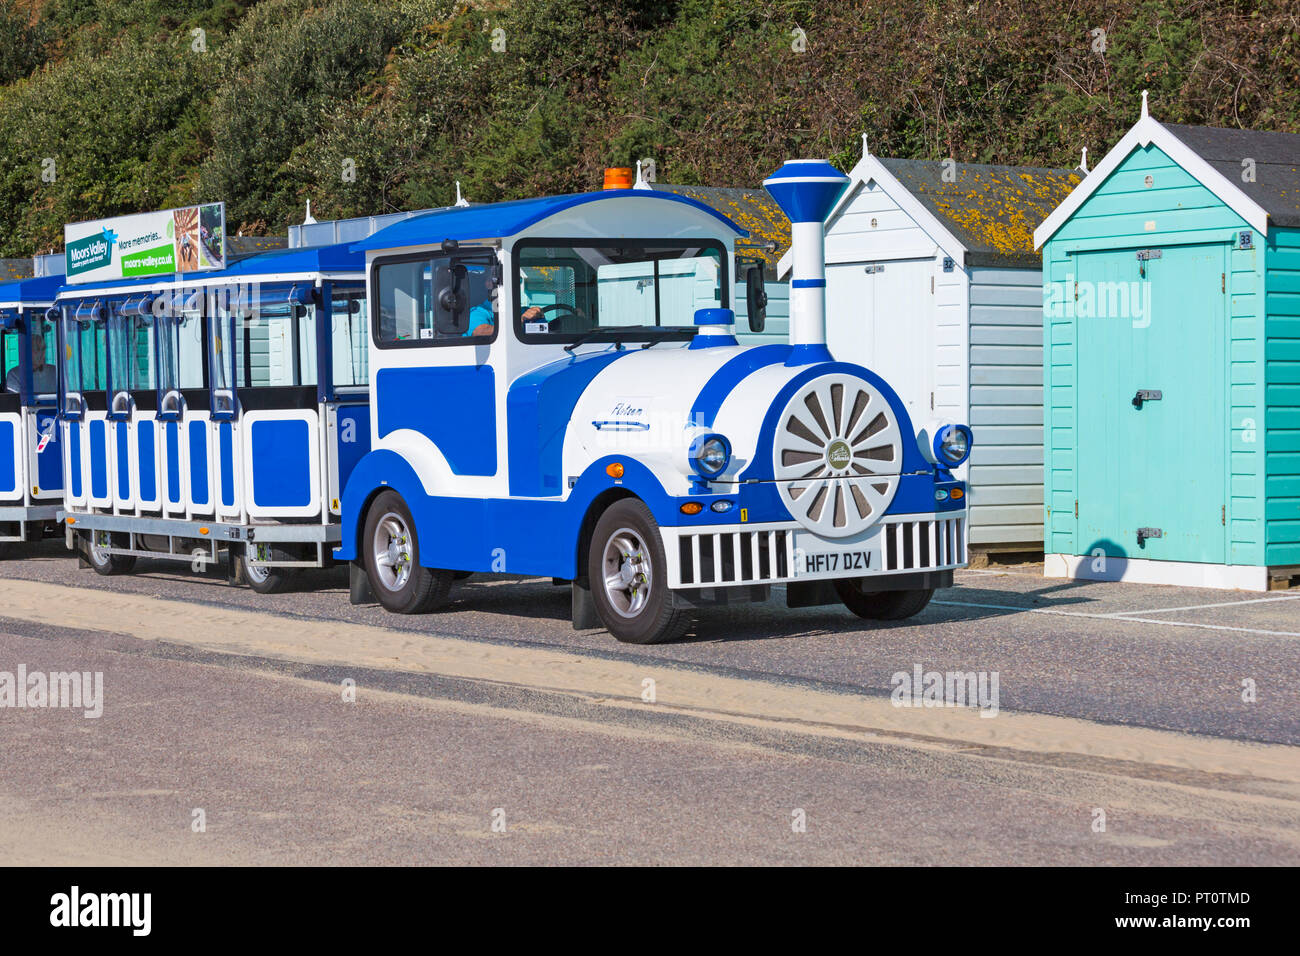 Zoé landtrain, petit train, promenade le long cours des cabanes de plage à Bournemouth, Dorset UK en Septembre Banque D'Images